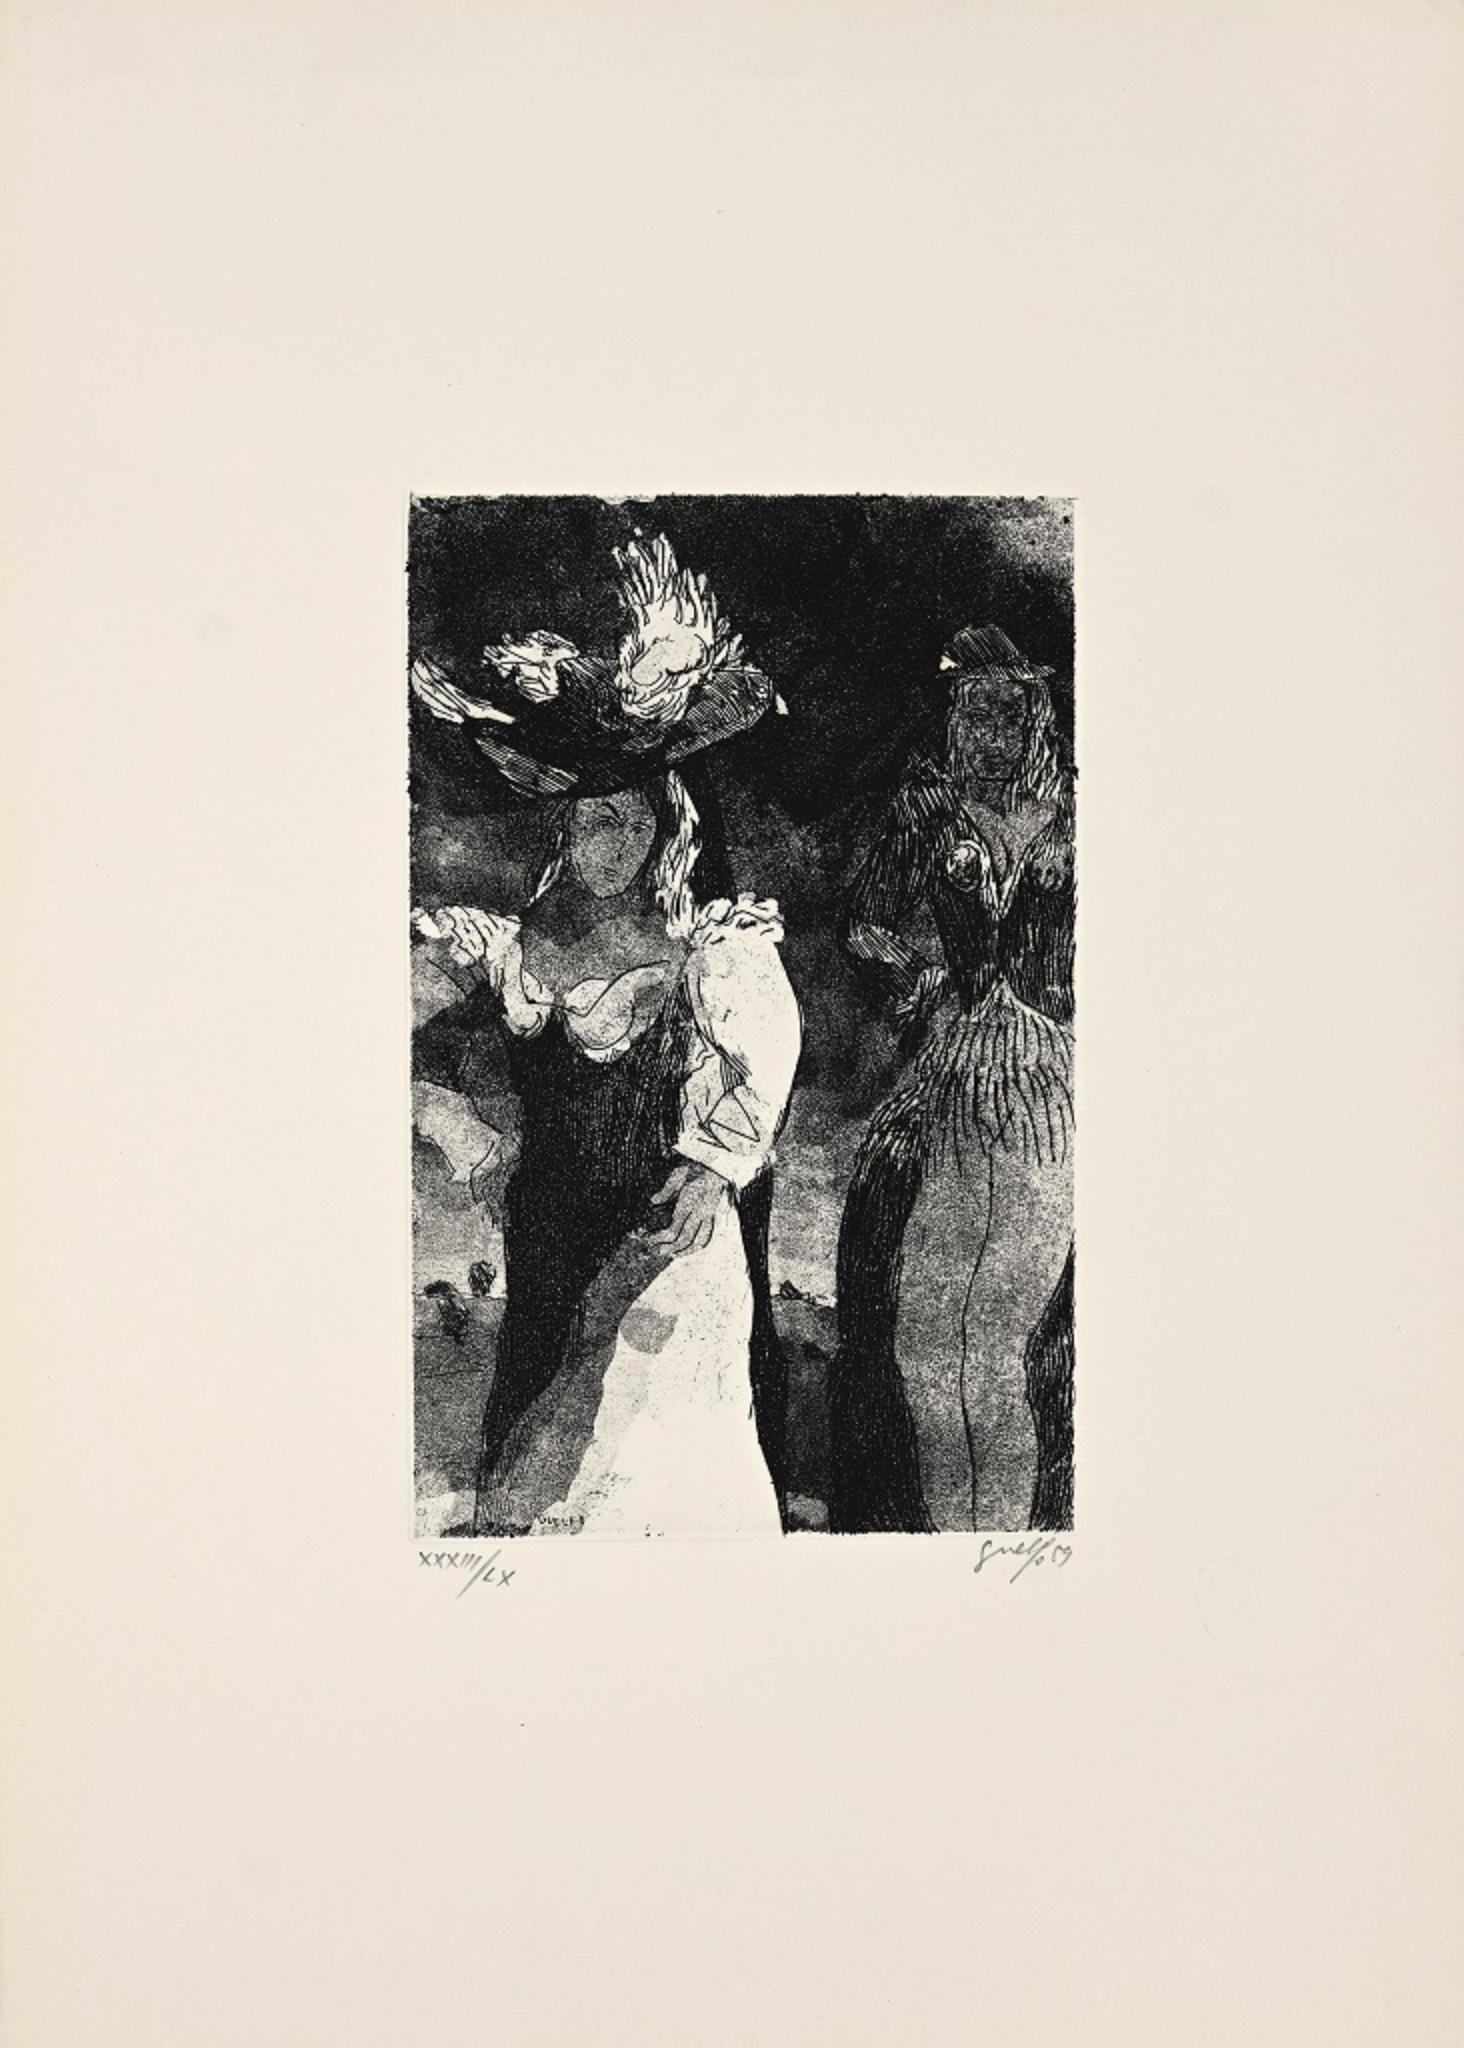 Night Dream ist eine Original-Radierung von Guelfo Bianchini aus dem Jahr 1959.

Das Kunstwerk ist vom Künstler in der rechten unteren Ecke handsigniert und in der linken unteren Ecke nummeriert (33/60).

In sehr gutem Zustand und auf einen weißen